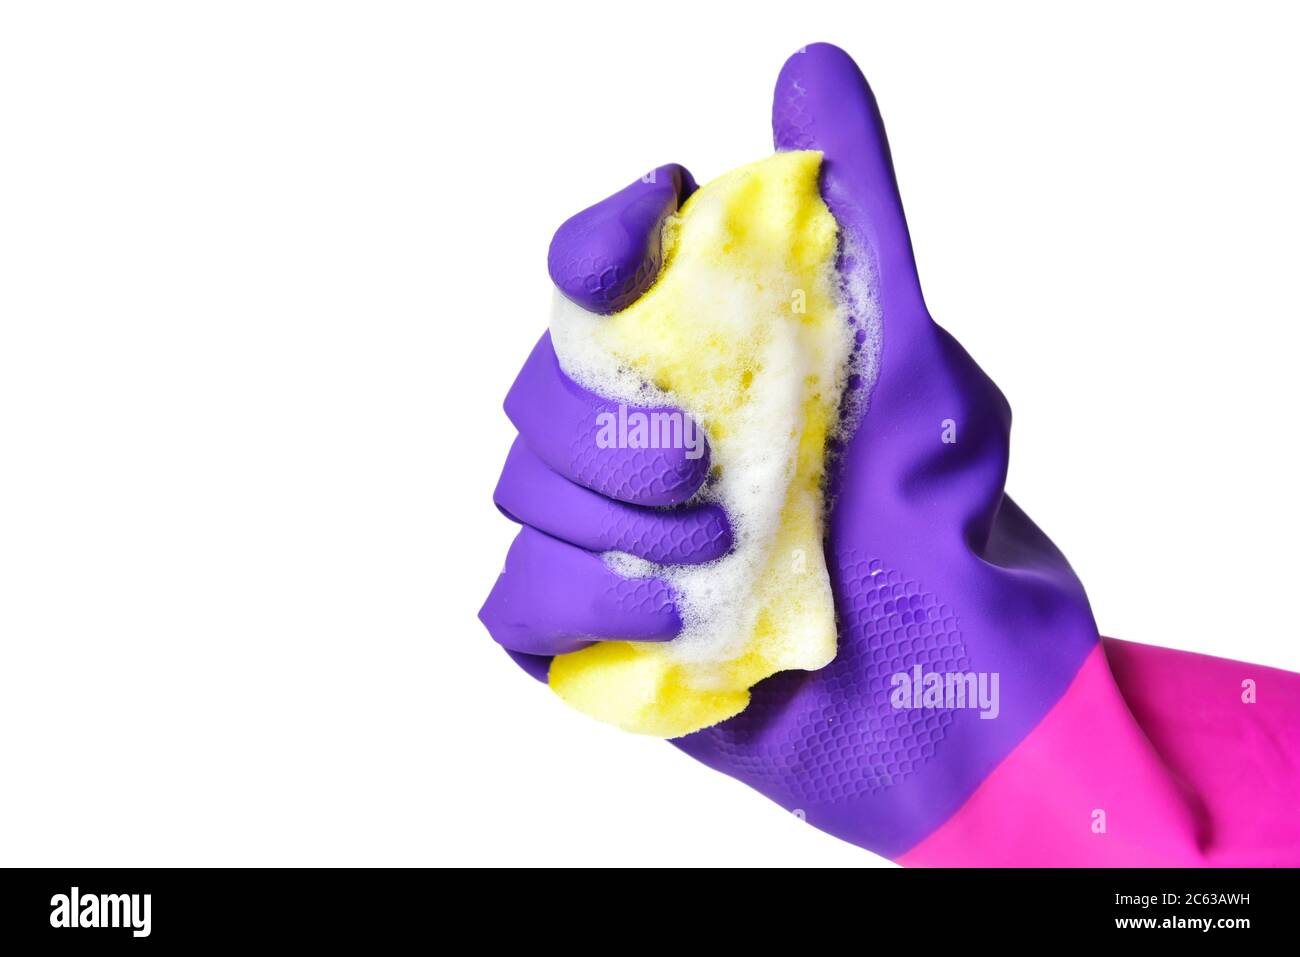 La main avec des gants presse une éponge de lavage de vaisselle avec mousse isolée Banque D'Images